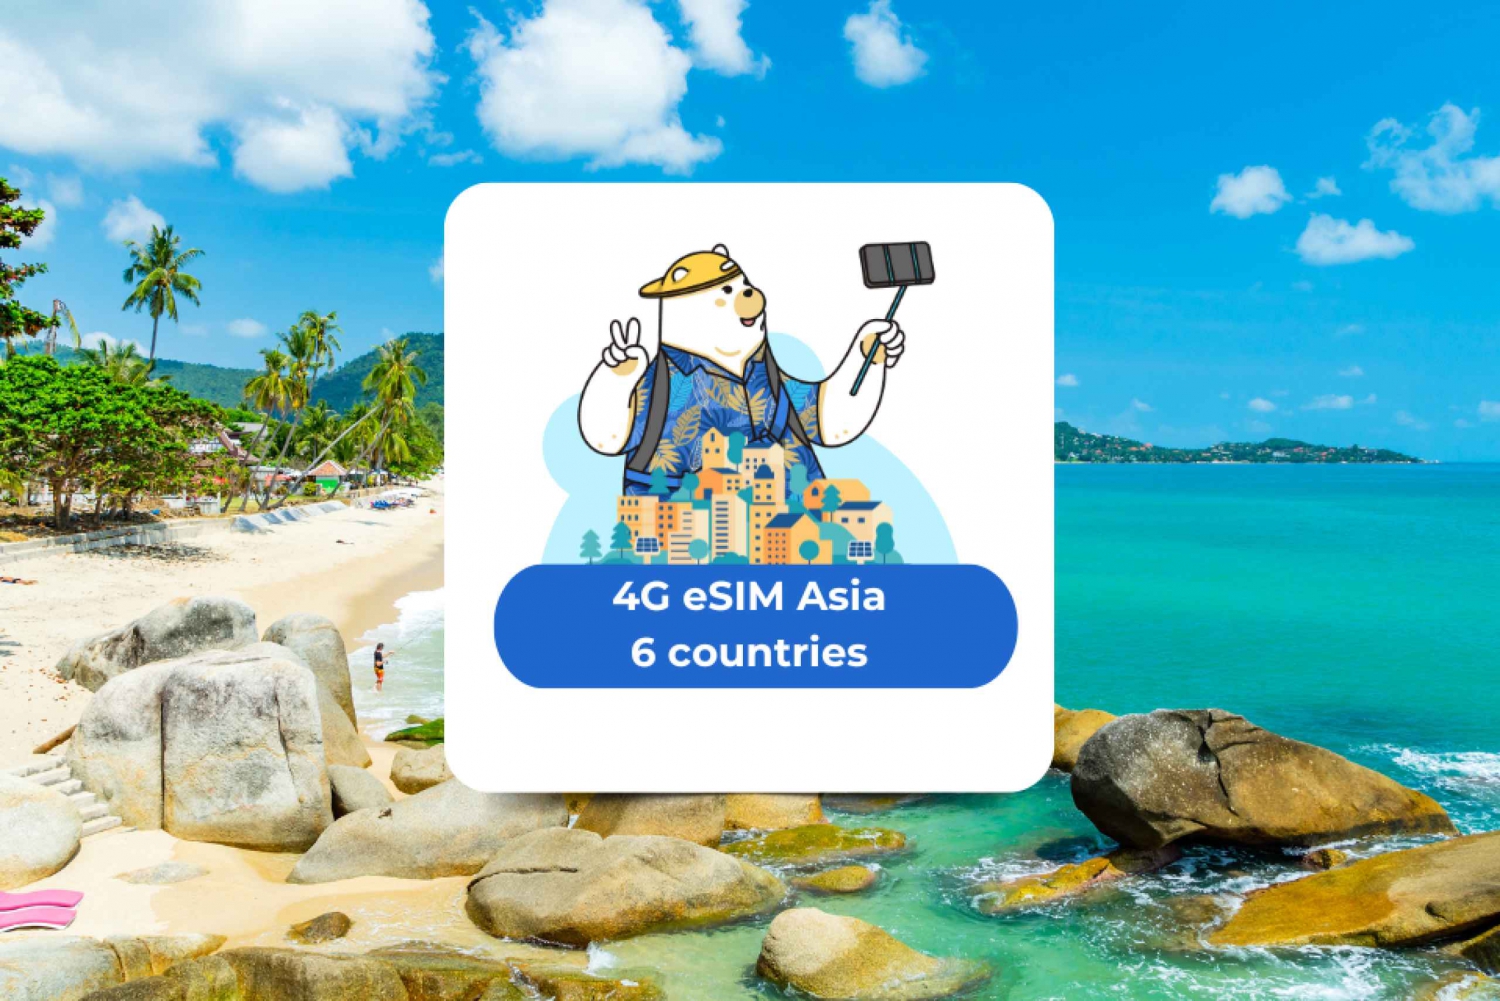 Aasia: eSIM Mobile Data (6 maata)